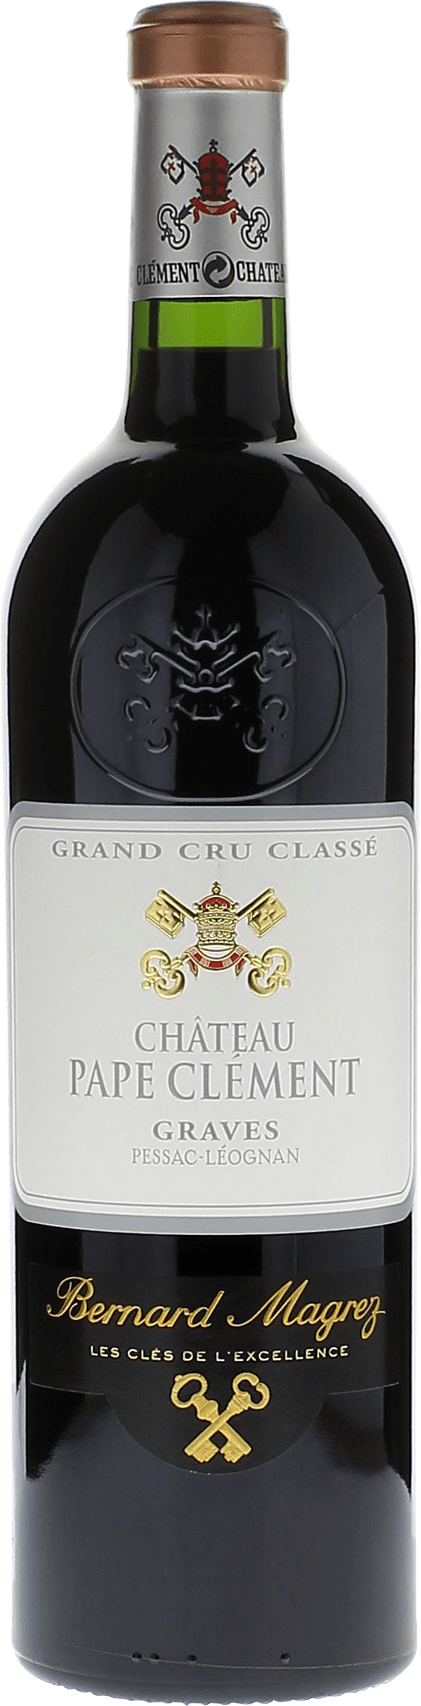 Pape clement rouge 2019 Grand Cru Class Pessac-Lognan, Bordeaux rouge